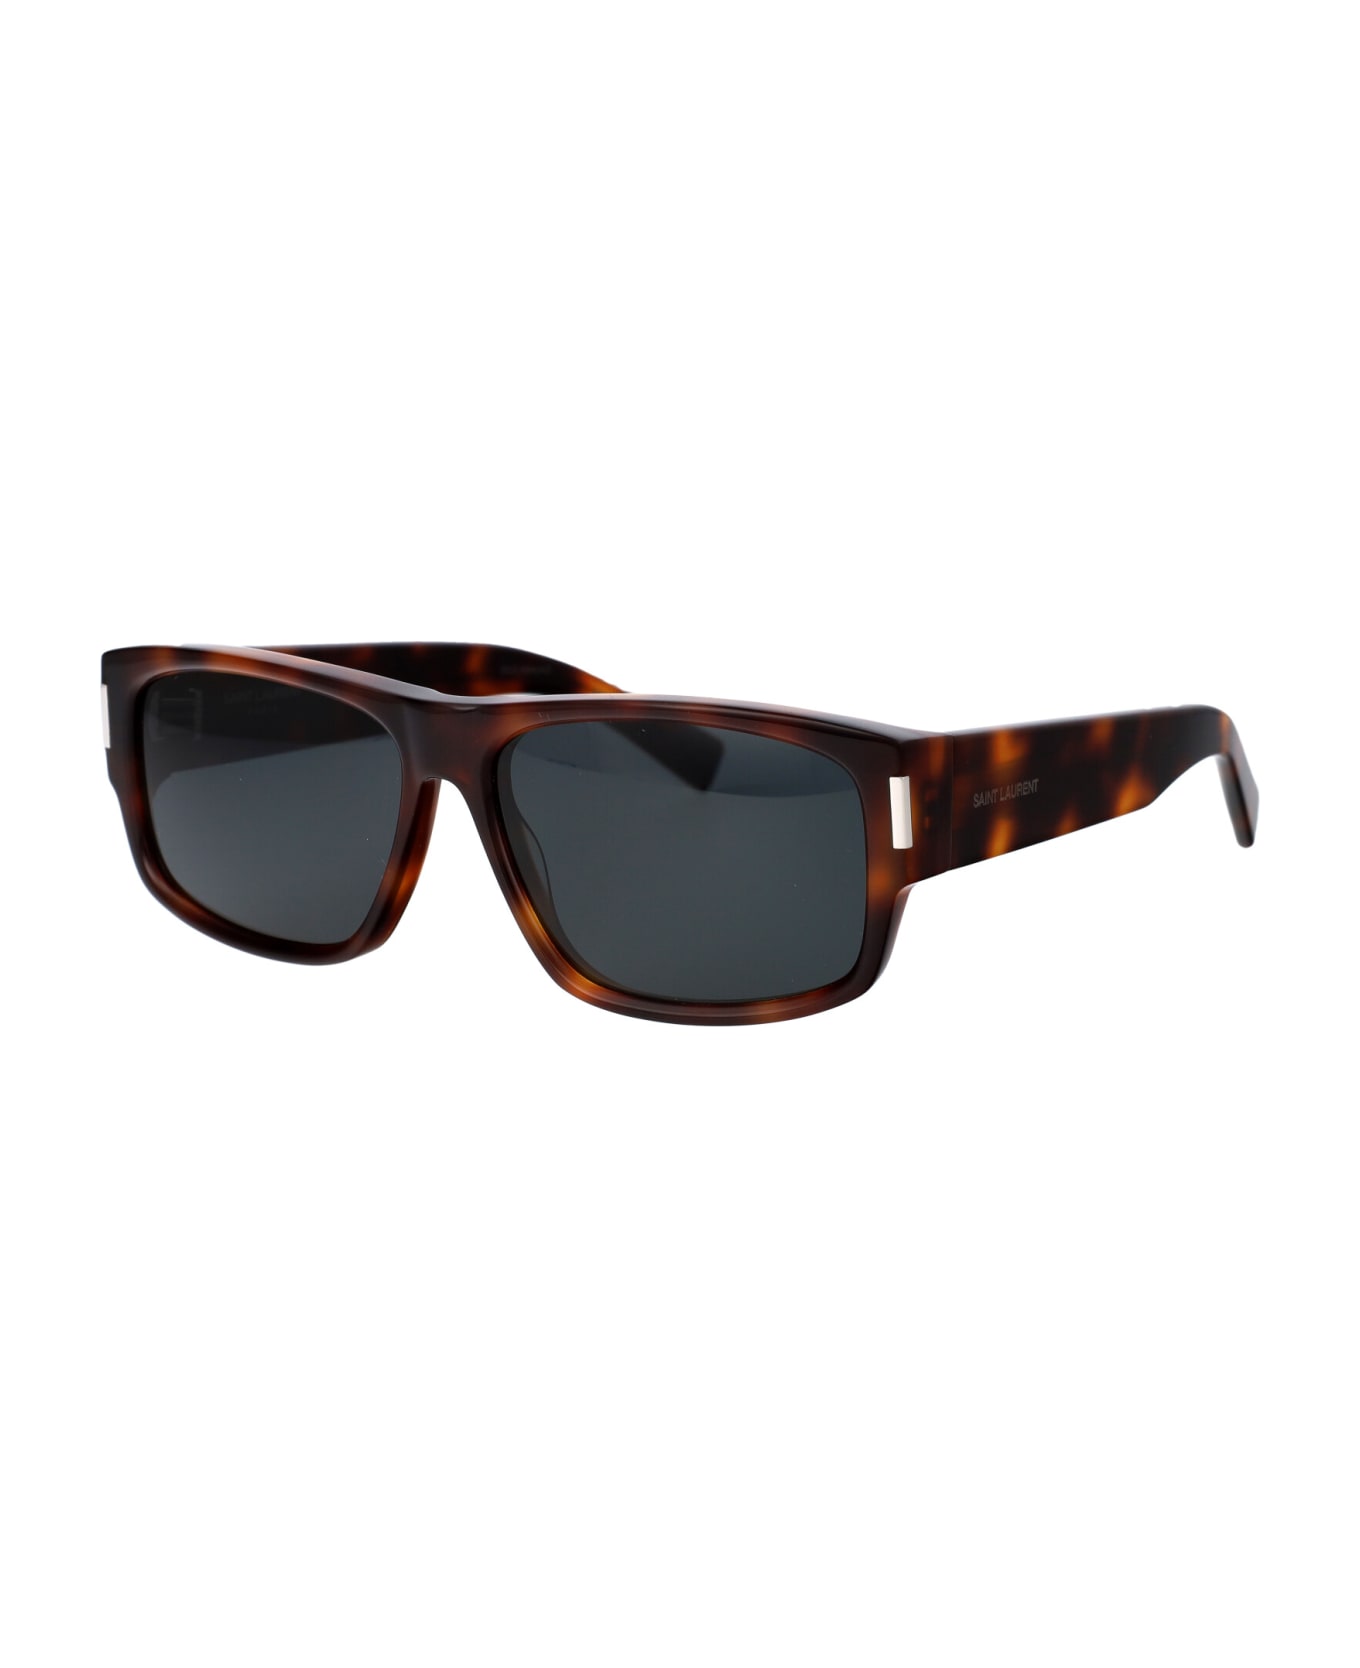 Saint Laurent Eyewear Sl 689 Sunglasses - 002 HAVANA HAVANA BLACK サングラス